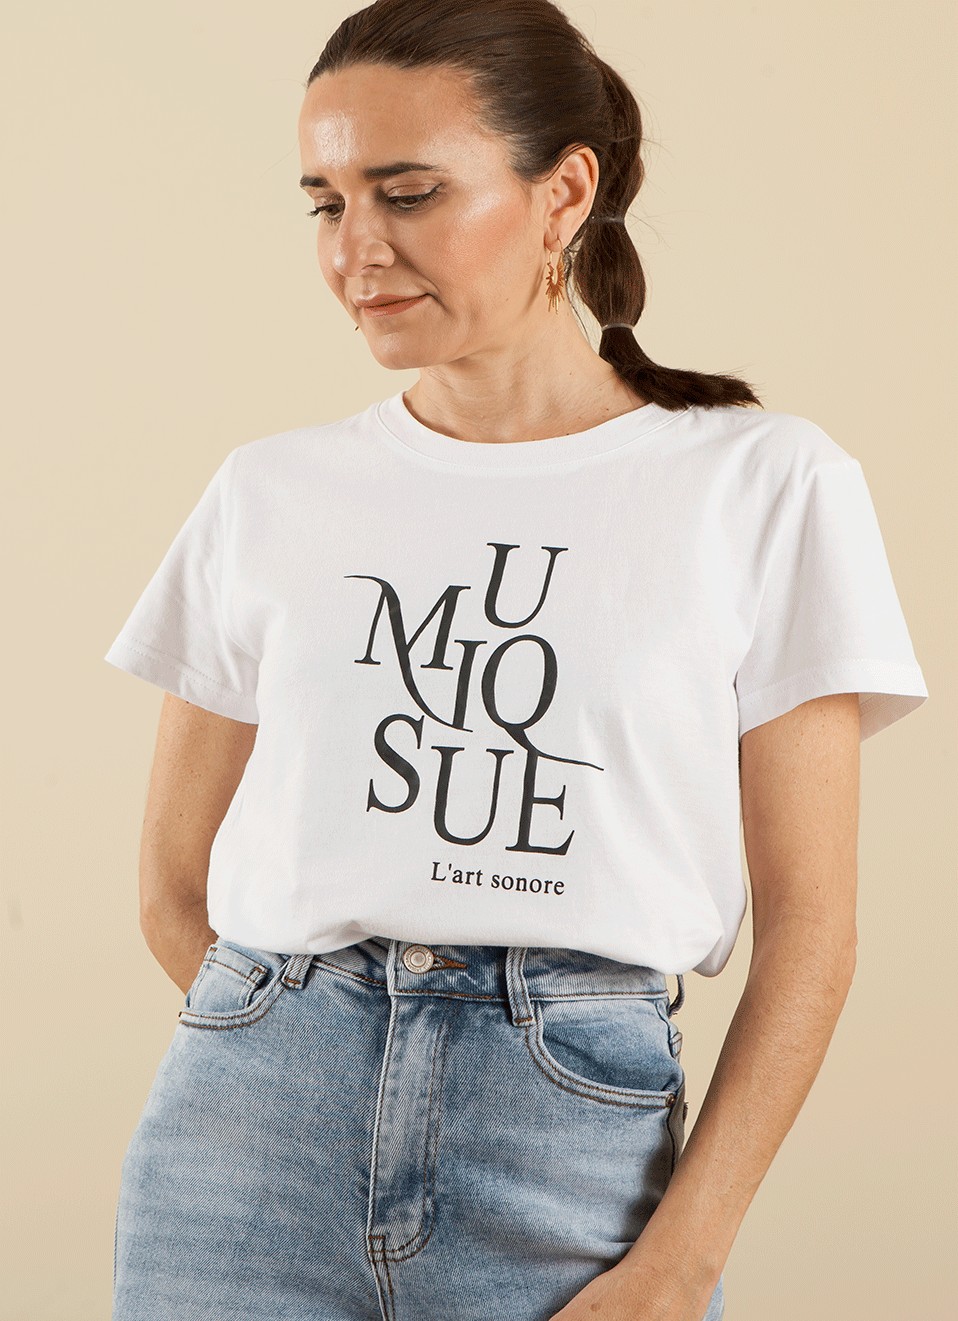 Camiseta Texto musique